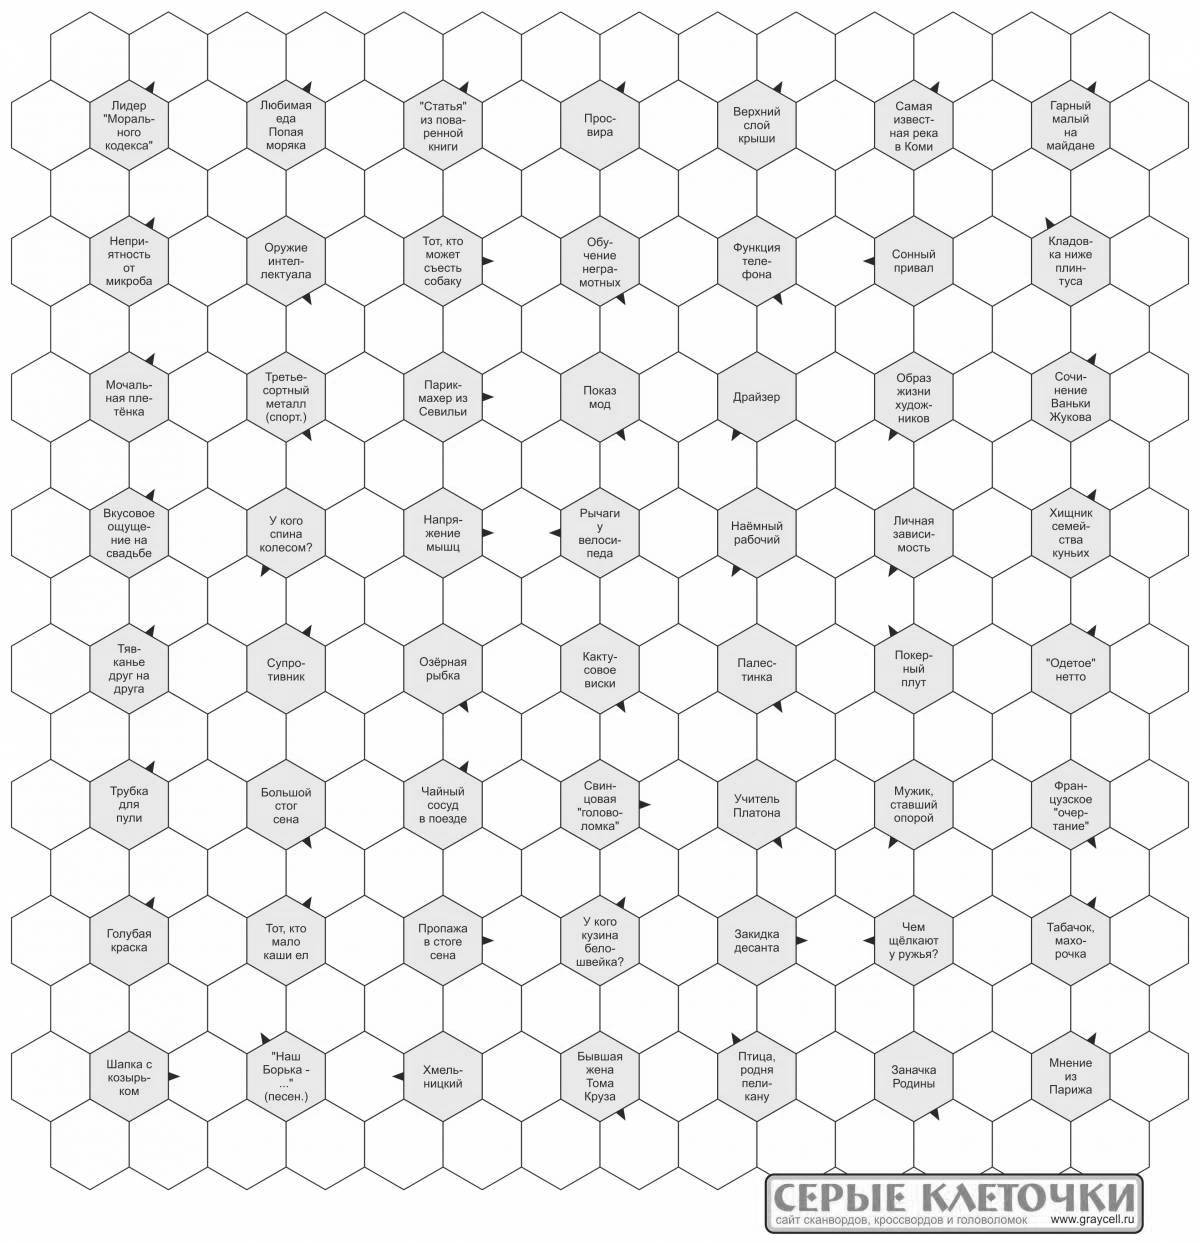 Impressive manual crossword of ceramic tiles